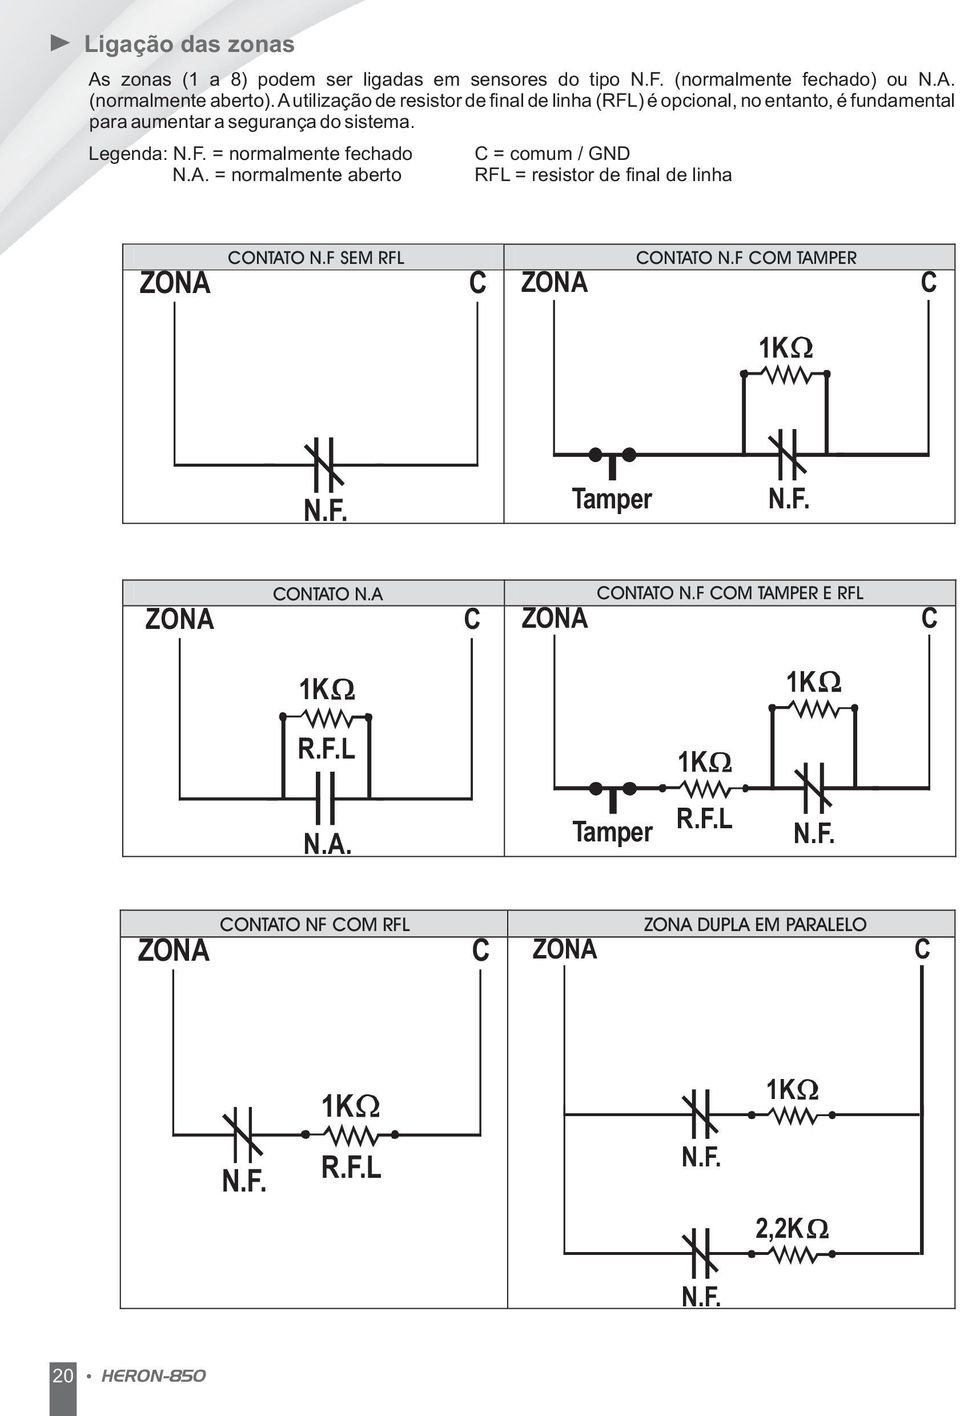 A. = normalmente aberto C = comum / GND RFL = resistor de final de linha ZONA CONTATO N.F SEM RFL C ZONA CONTATO N.F COM TAMPER C 1K N.F. Tamper N.F. ZONA CONTATO N.A C ZONA CONTATO N.